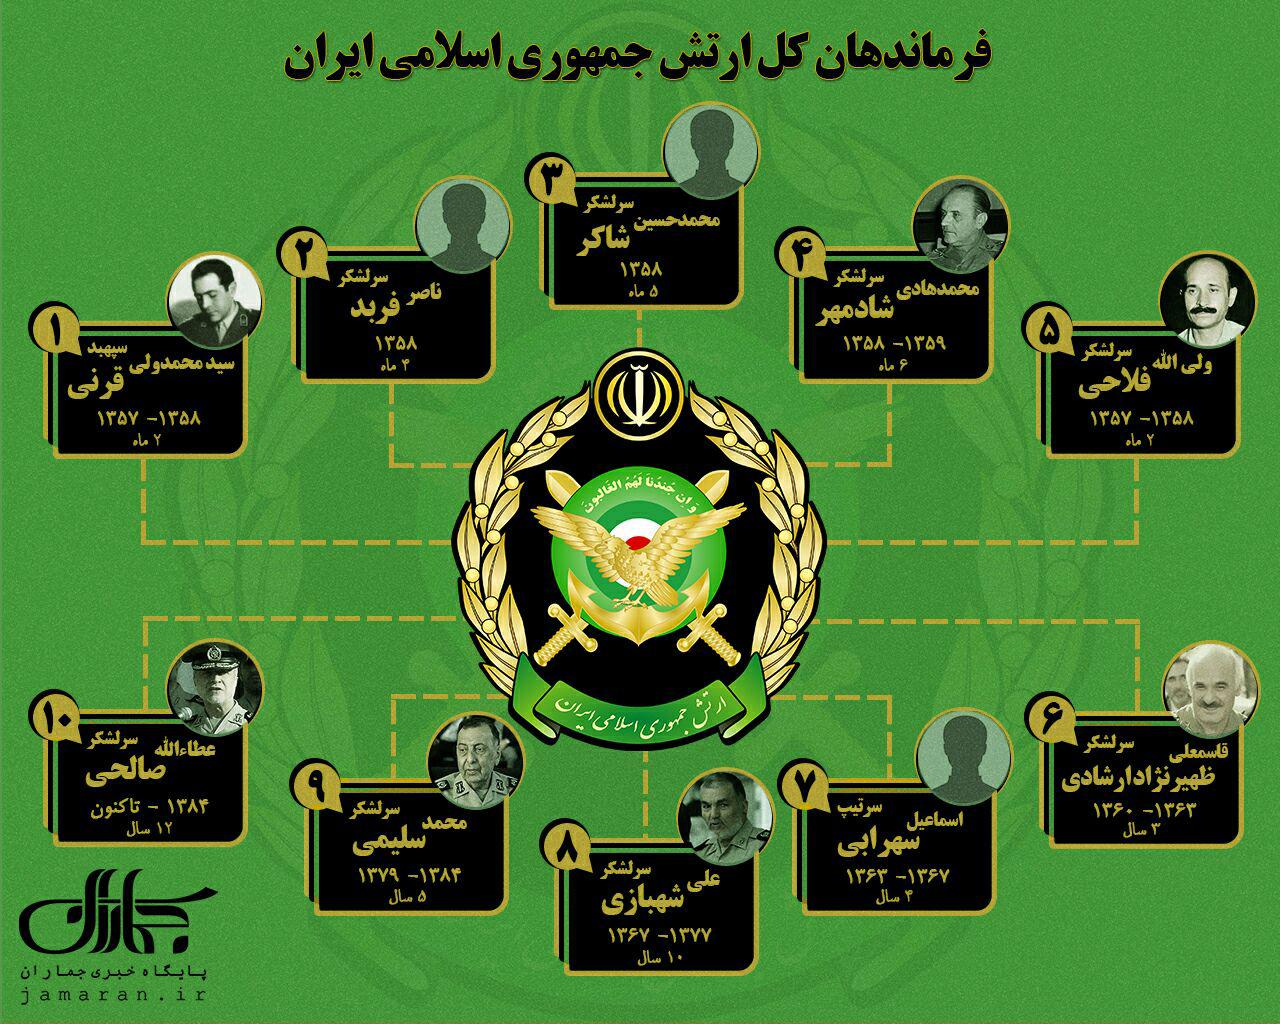 فرماندهان ارتش از ابتدای انقلاب اسلامی تاکنون+عکس